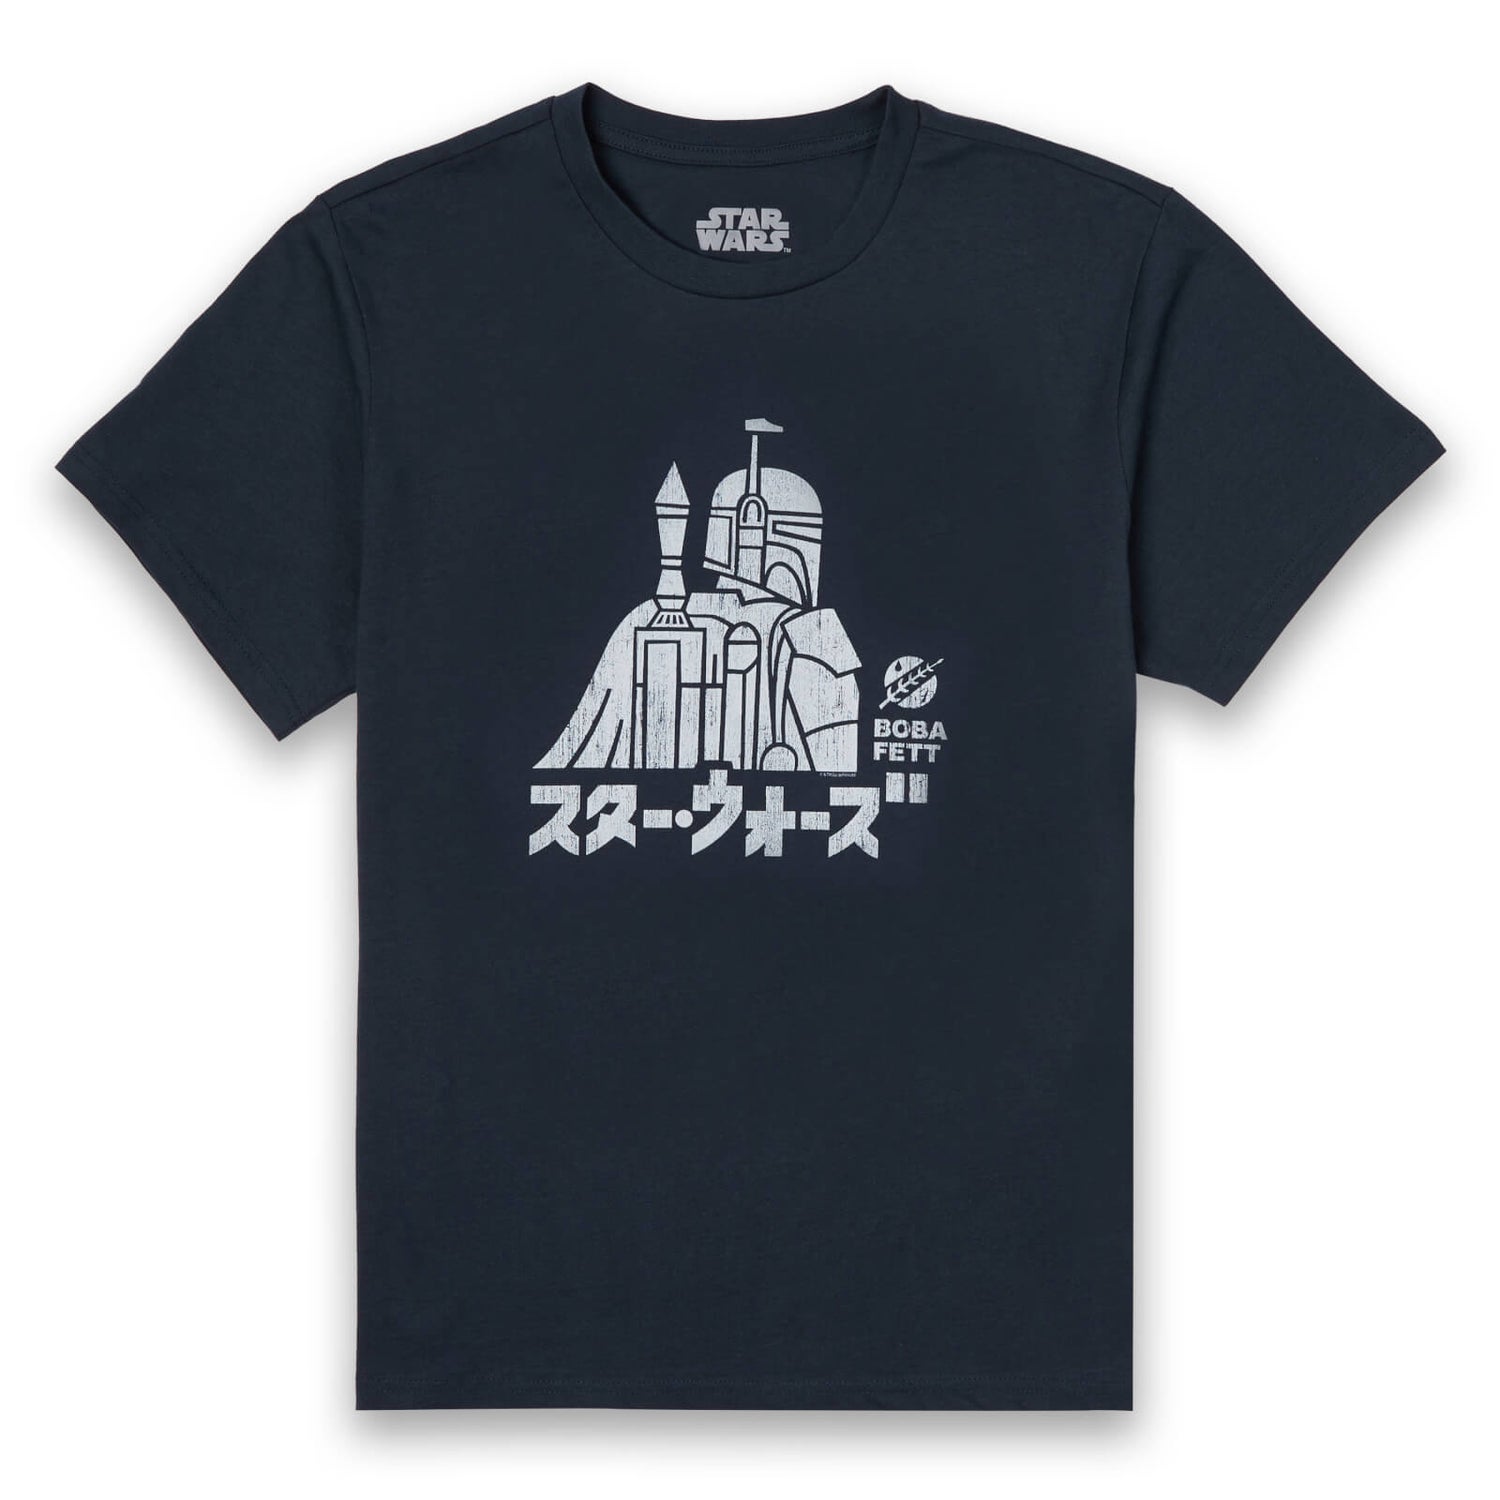 Star Wars Kana Boba Fett t-shirt - Navy